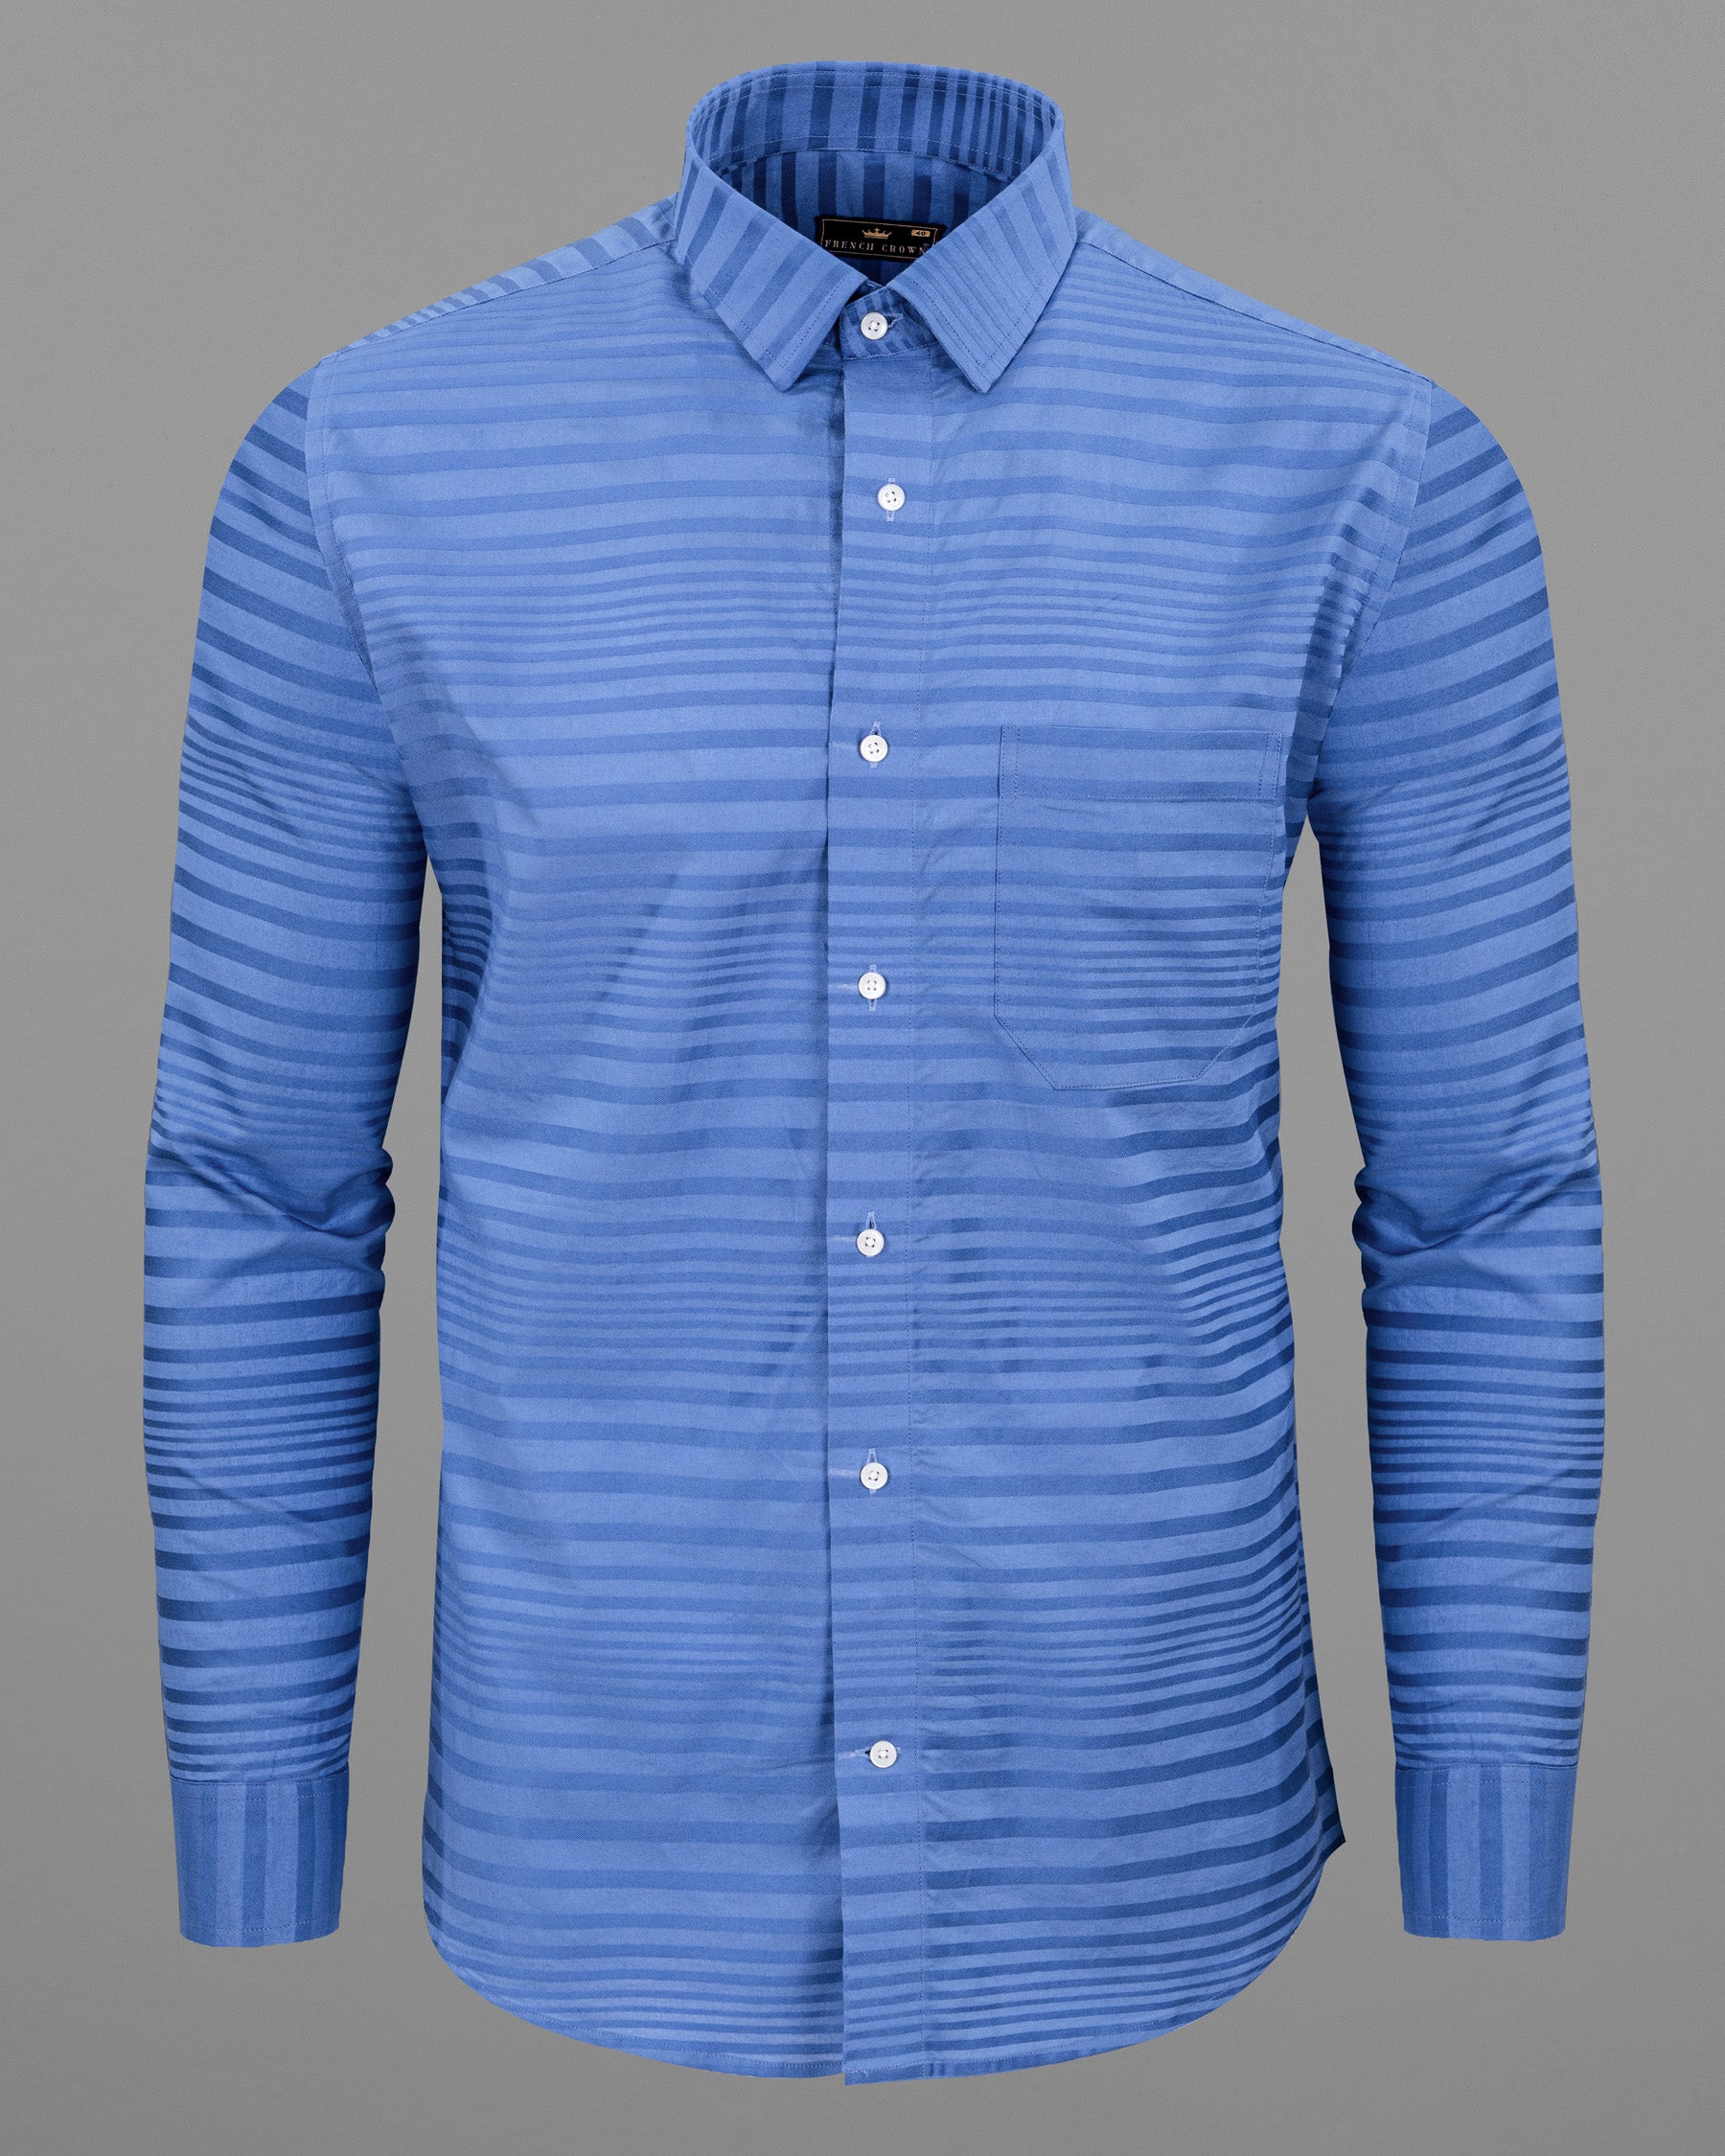 Endeavour Blue Striped Dobby Textured Premium Giza Cotton Shirt 5533-38, 5533-H-38, 5533-39, 5533-H-39, 5533-40, 5533-H-40, 5533-42, 5533-H-42, 5533-44, 5533-H-44, 5533-46, 5533-H-46, 5533-48, 5533-H-48, 5533-50, 5533-H-50, 5533-52, 5533-H-52